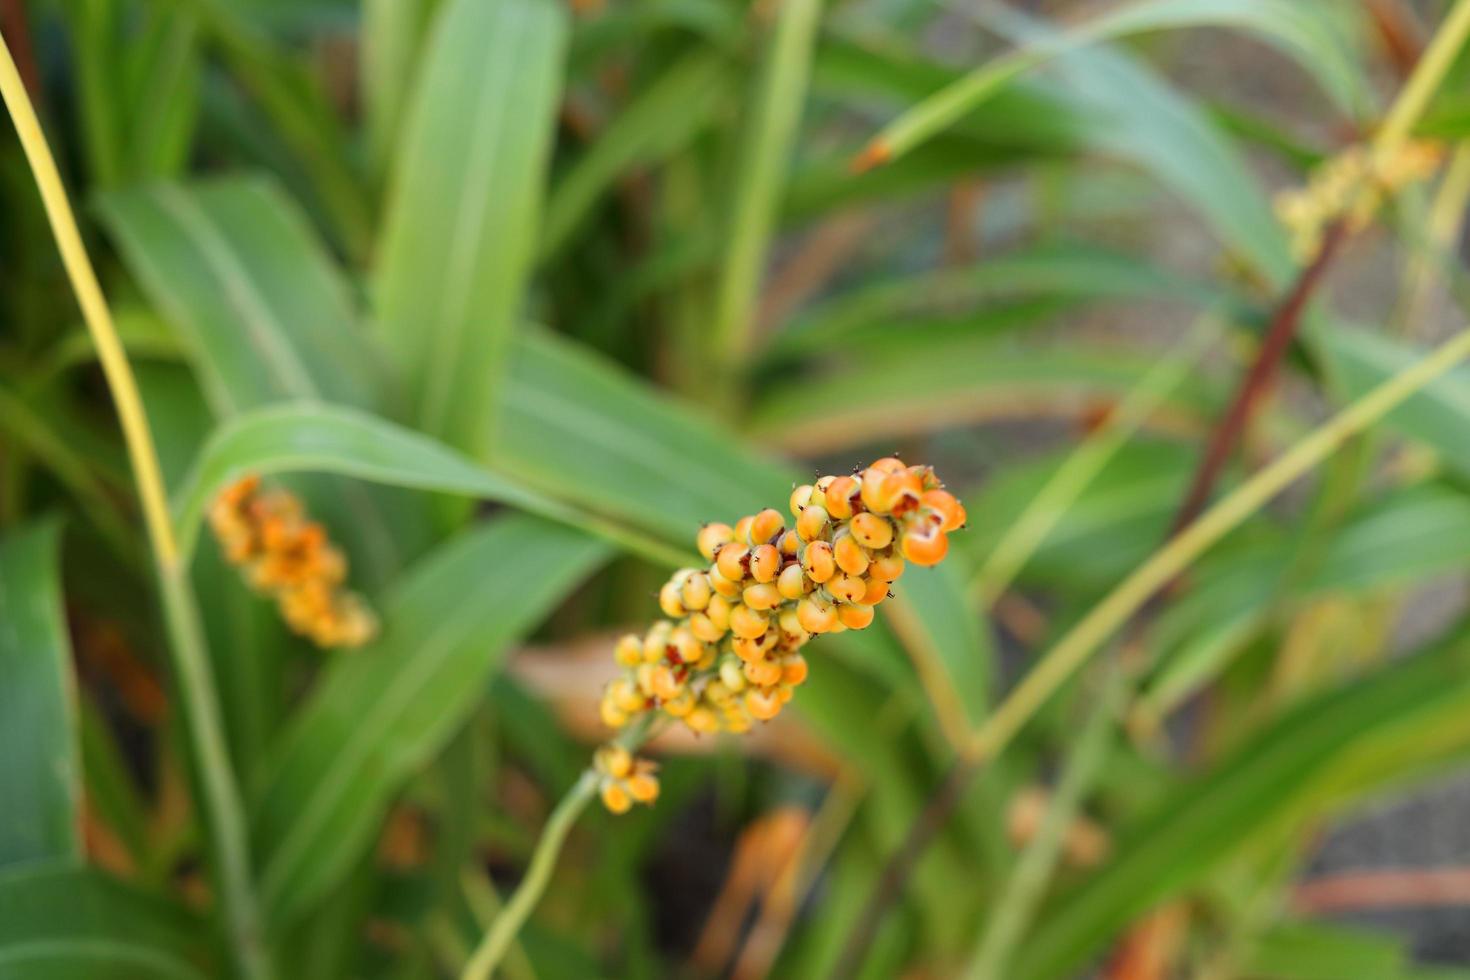 semente madura laranja clara de milho ou sorgo no galho e desfoque o fundo das folhas verdes, tailândia. foto